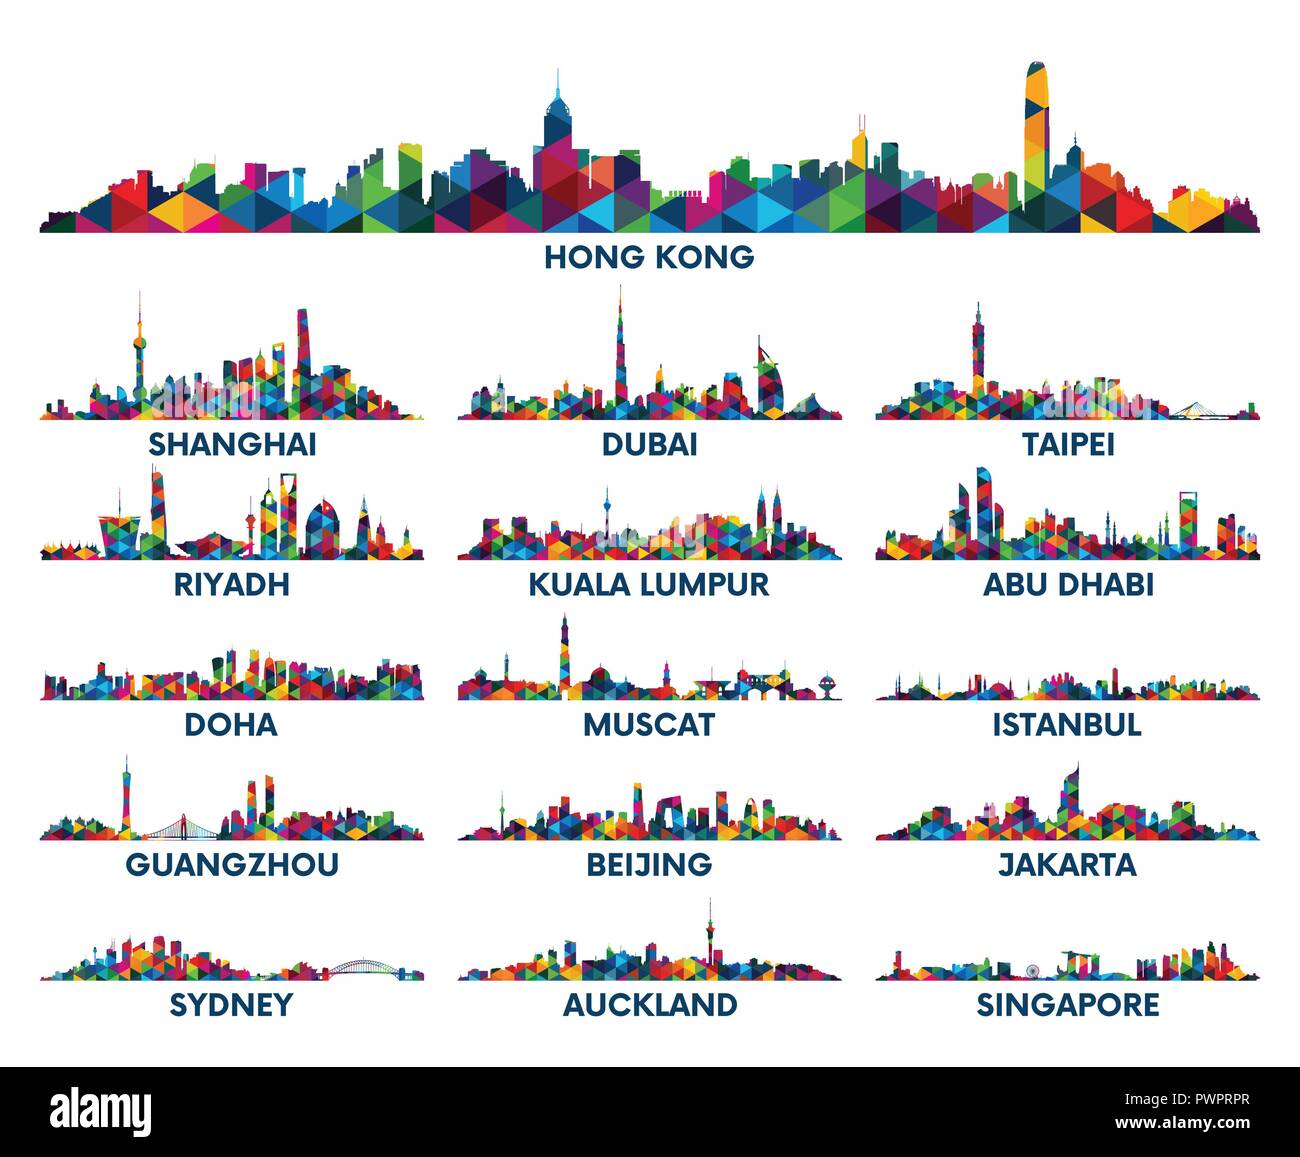 Motif géométrique skyline city Péninsule arabique et l'Asie grand ensemble de silhouettes vecteur ville Illustration de Vecteur